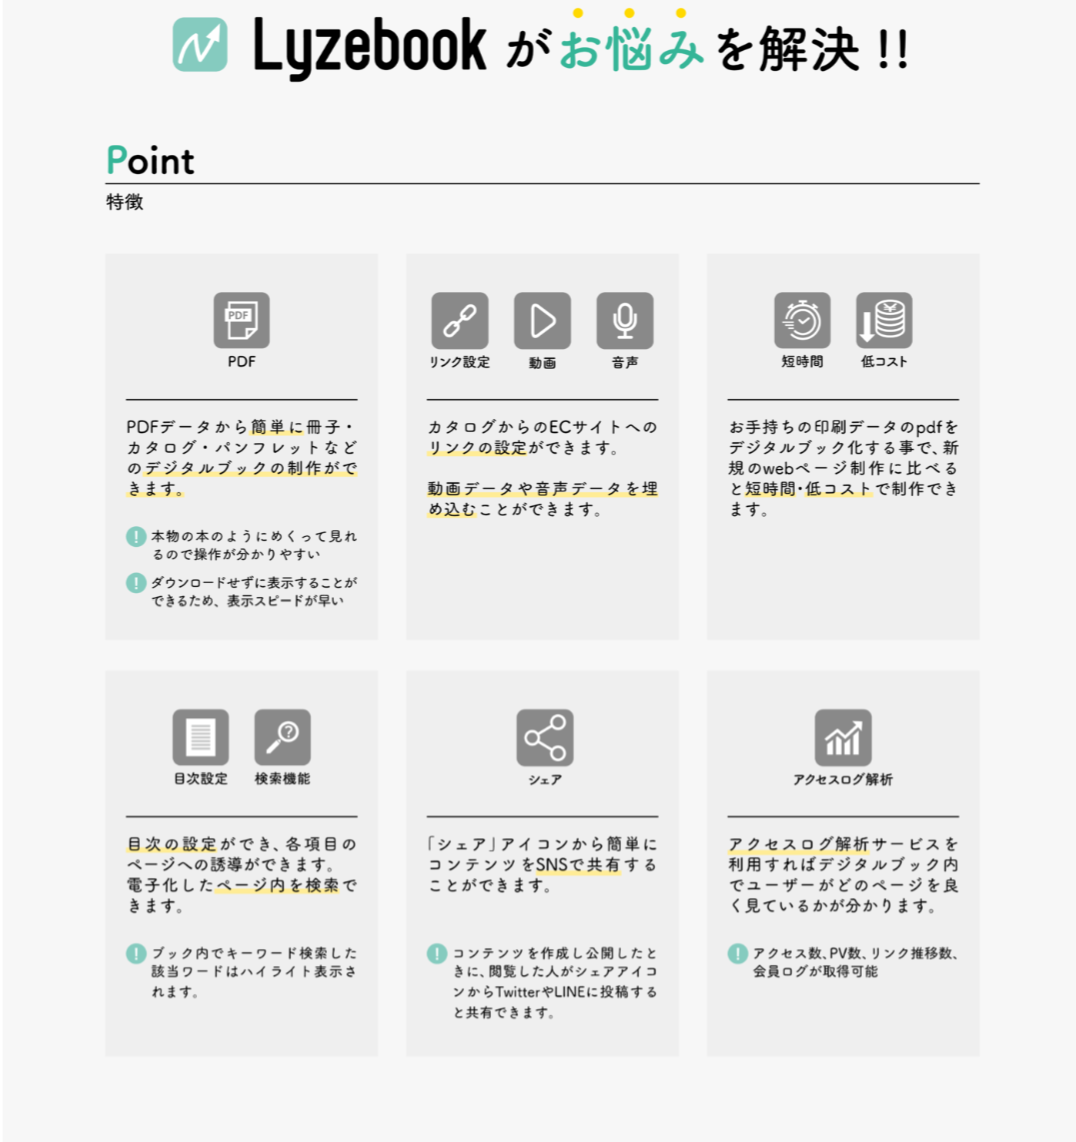 デジタルブック制作サービス「Lyzebook」